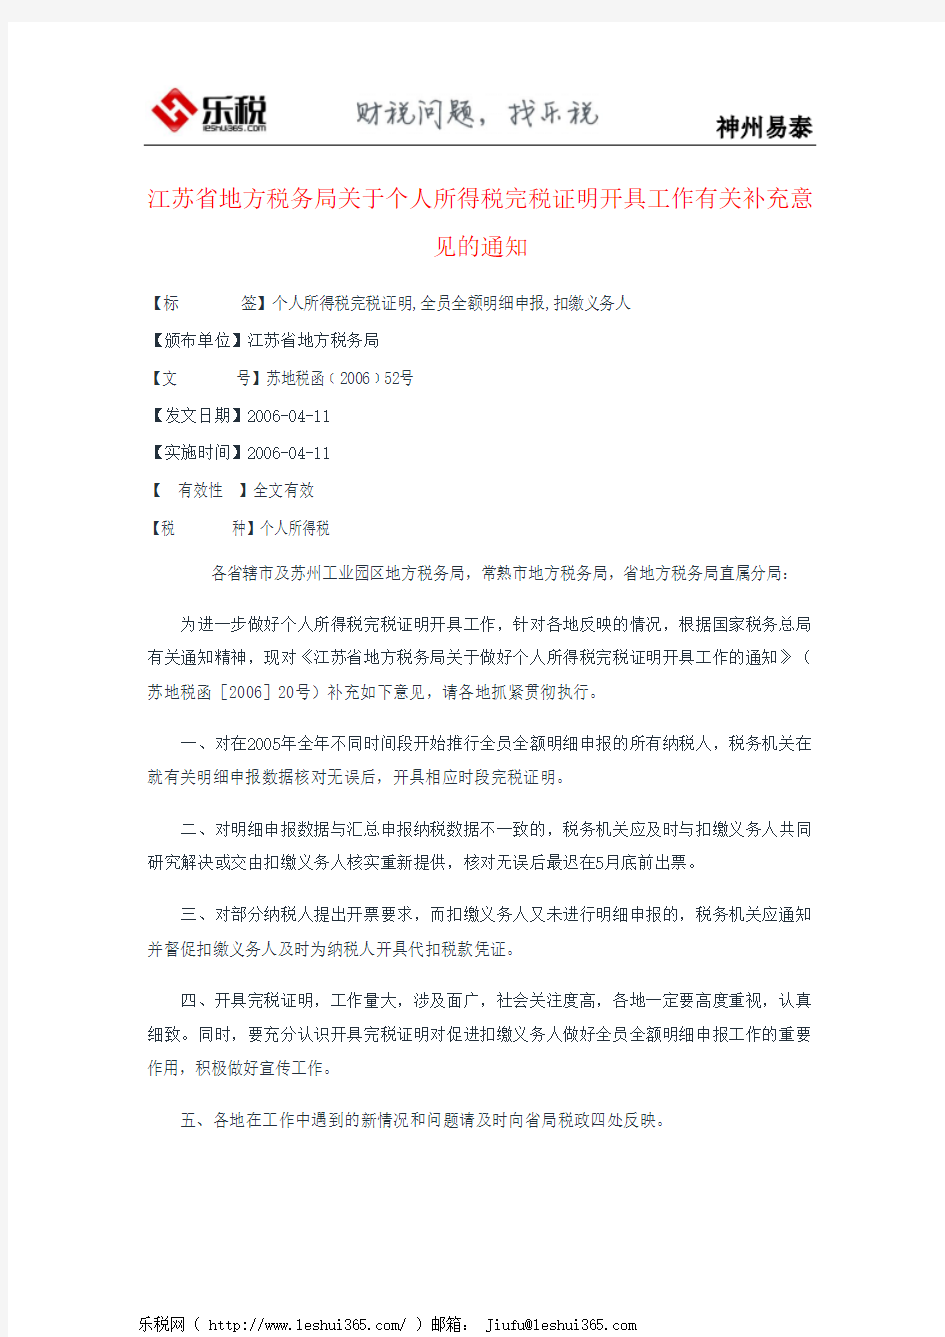 江苏省地方税务局关于个人所得税完税证明开具工作有关补充意见的通知